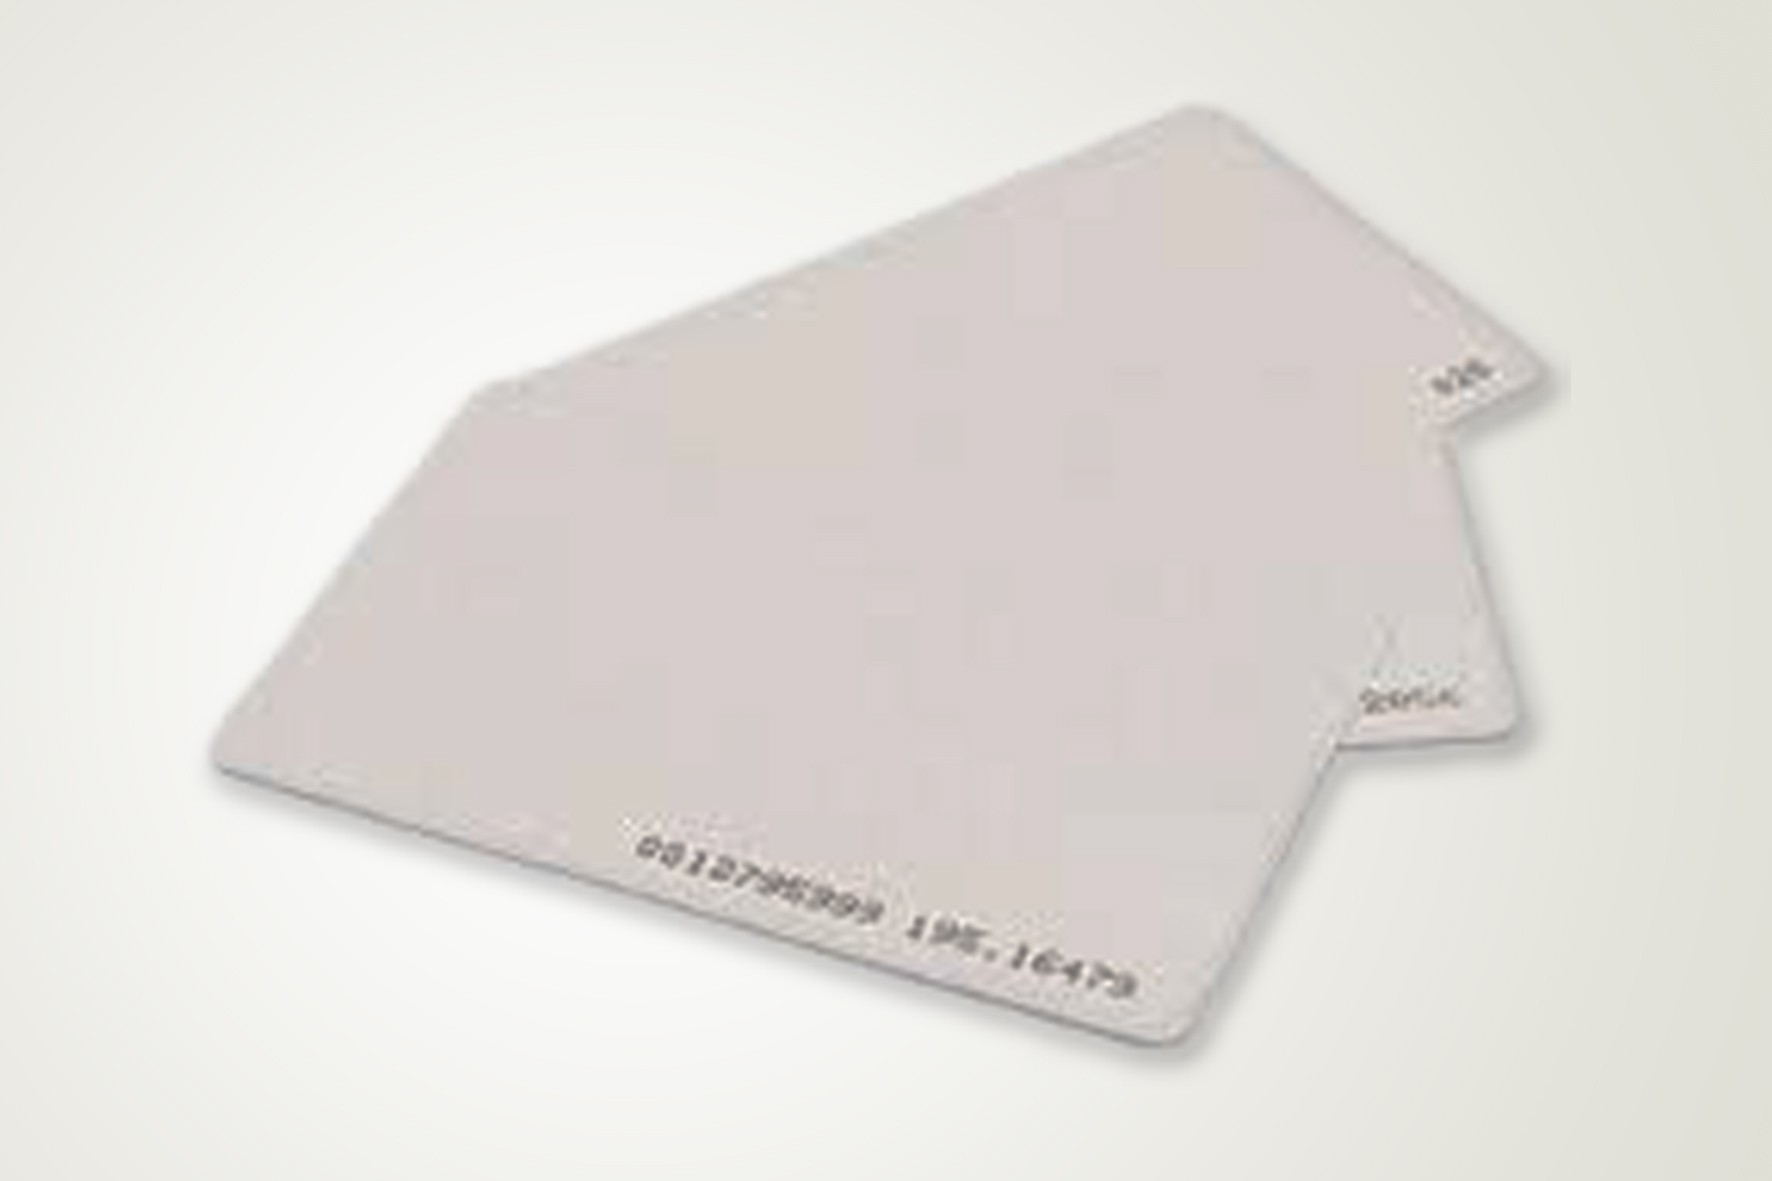 Cartão com Chip de Aproximidade na Vila União - Aviso de Porta